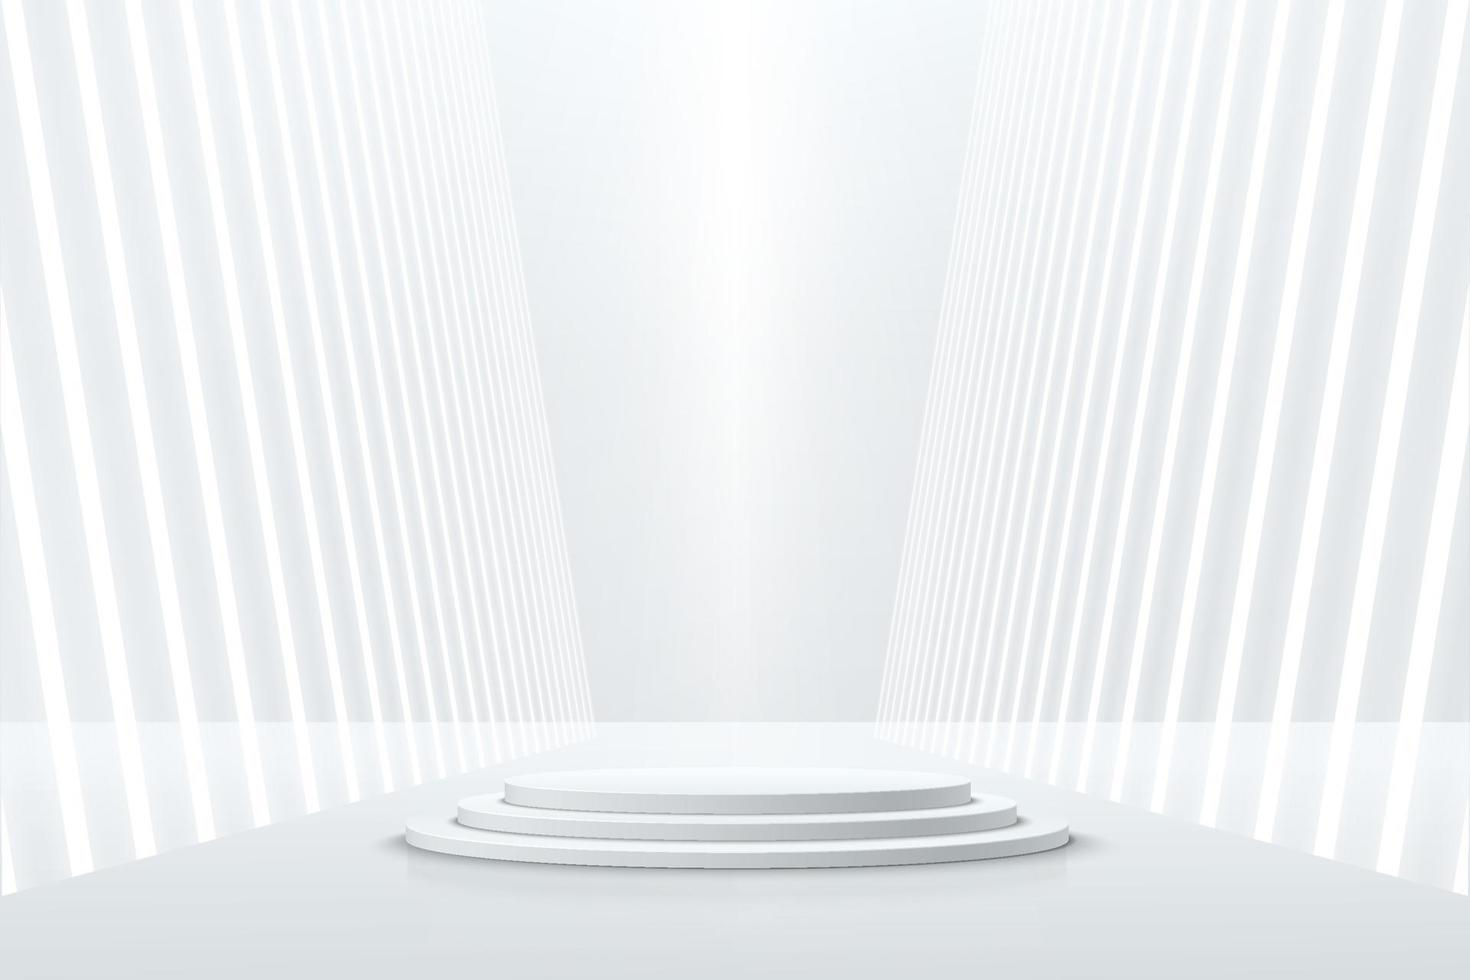 pódio de pedestal de cilindro realista branco com luz de néon de perspectiva. quarto de estúdio abstrato de vetor com plataforma geométrica 3d. cena minimalista de ficção científica futurista para vitrine de produtos, exibição de promoção.